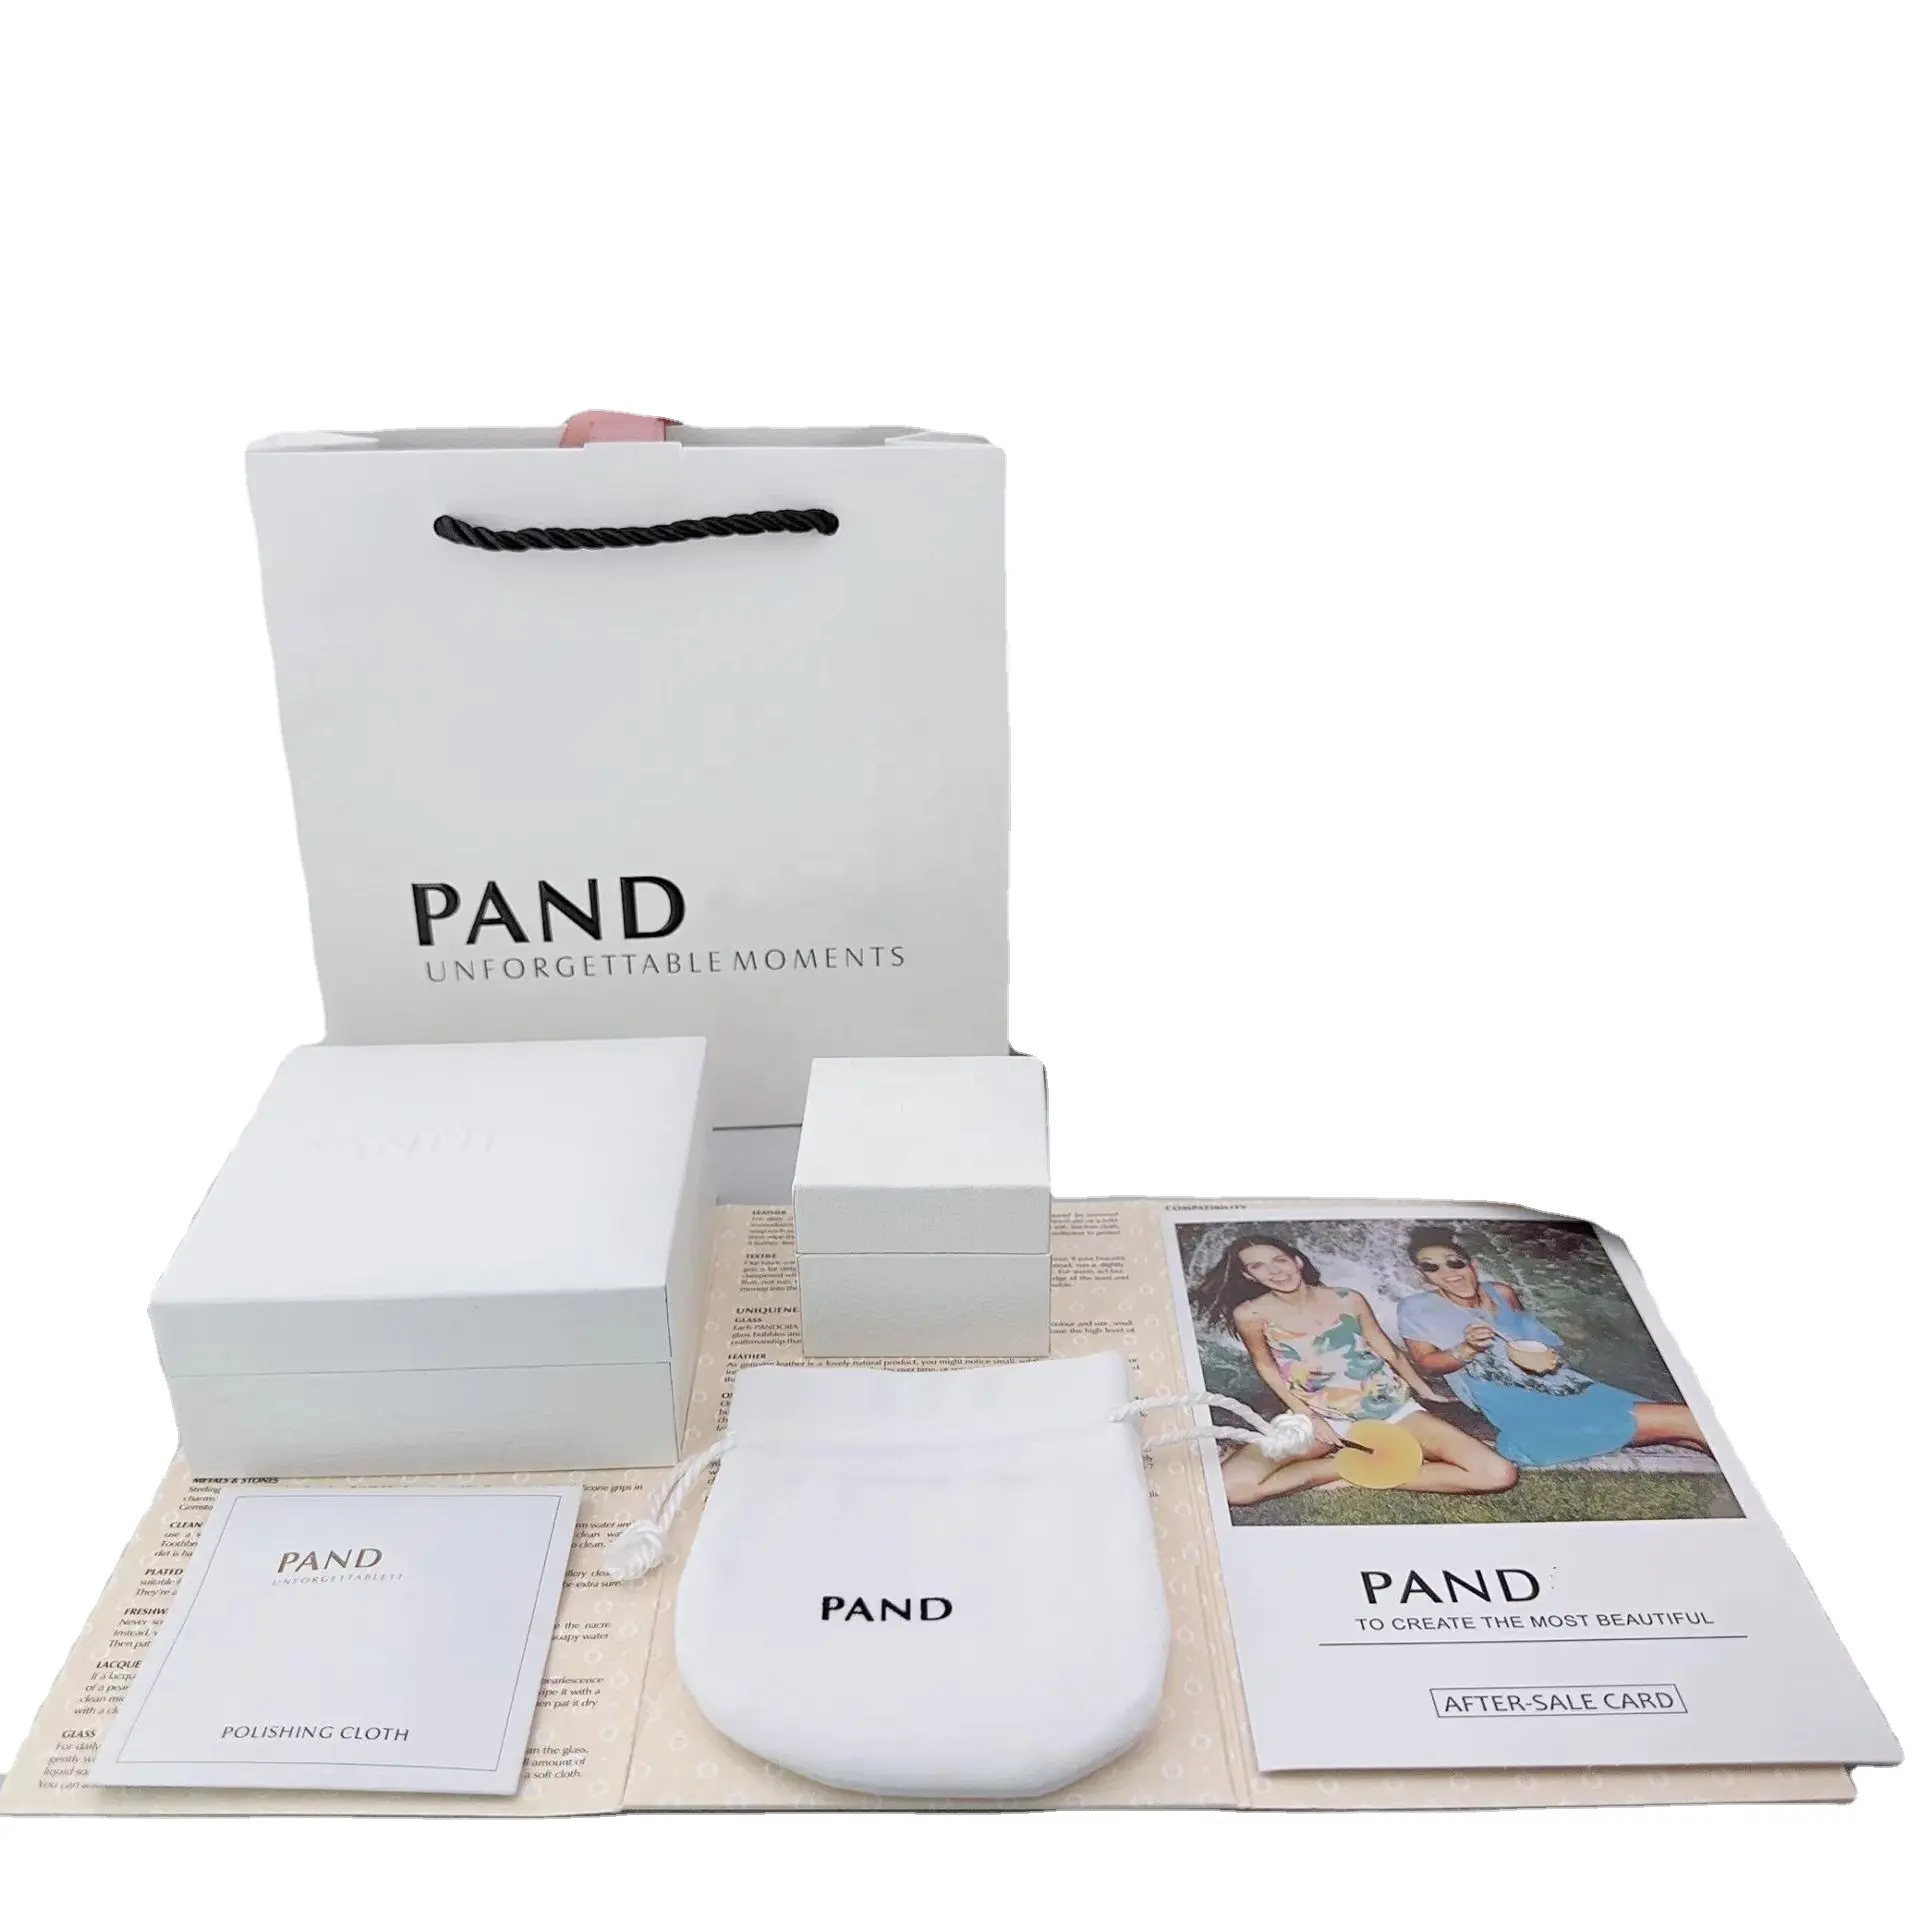 ชุดสูท pandora ชุดเครื่องประดับบรรจุภัณฑ์กล่องกระดาษกระเป๋ากระเป๋าถือสําหรับสร้อยข้อมือจี้ Charm แหวนสร้อยคอต่างหูของขวัญกล่อง